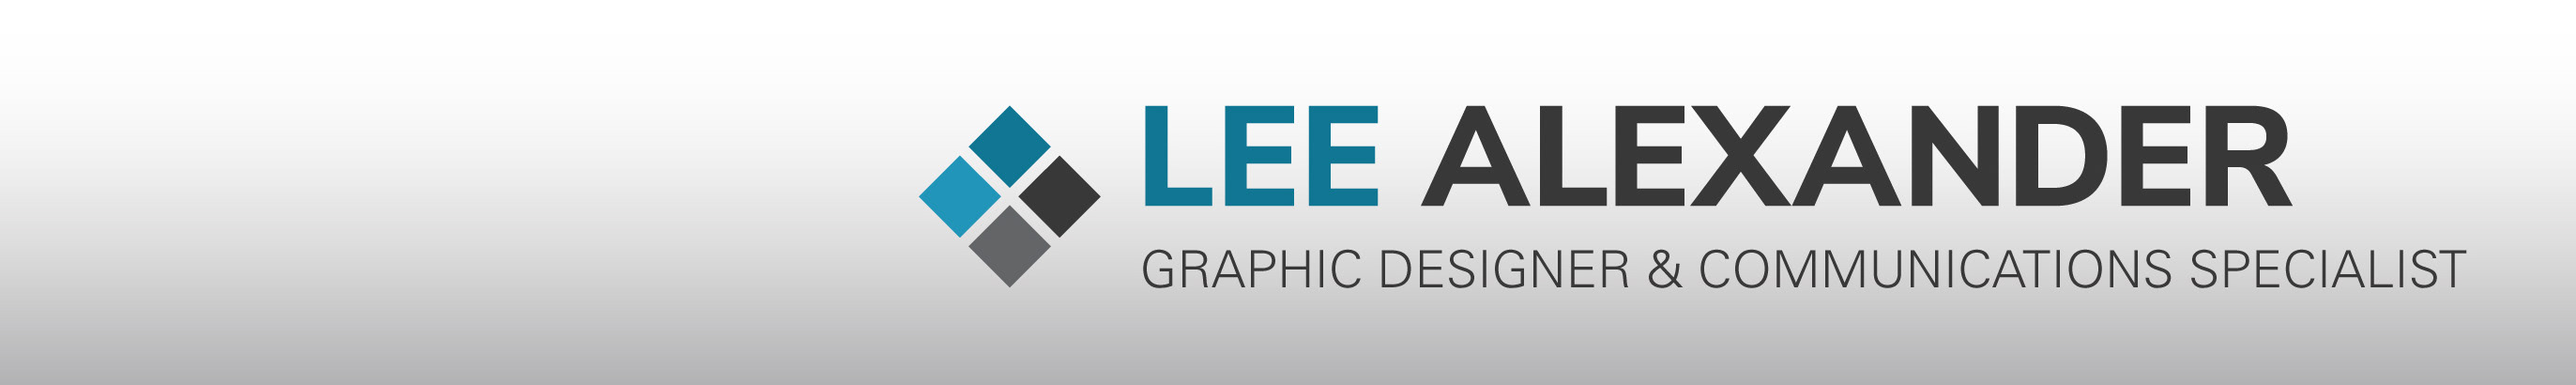 Lee Alexander's profile banner